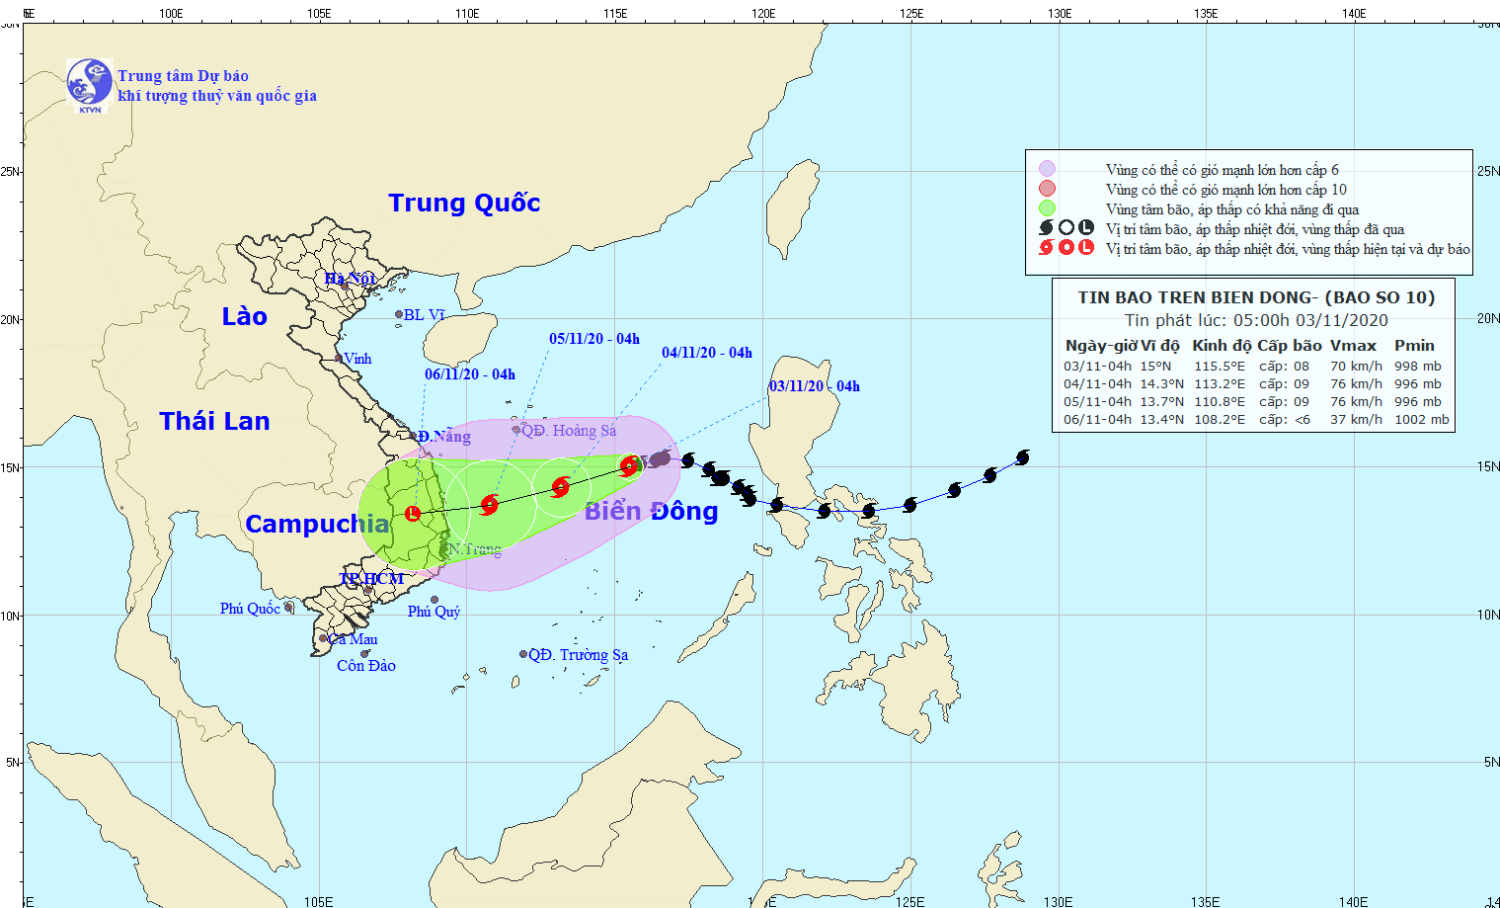 Tin bão trên Biển Đông - cơn bão số 10 (05h00 ngày 03/11)